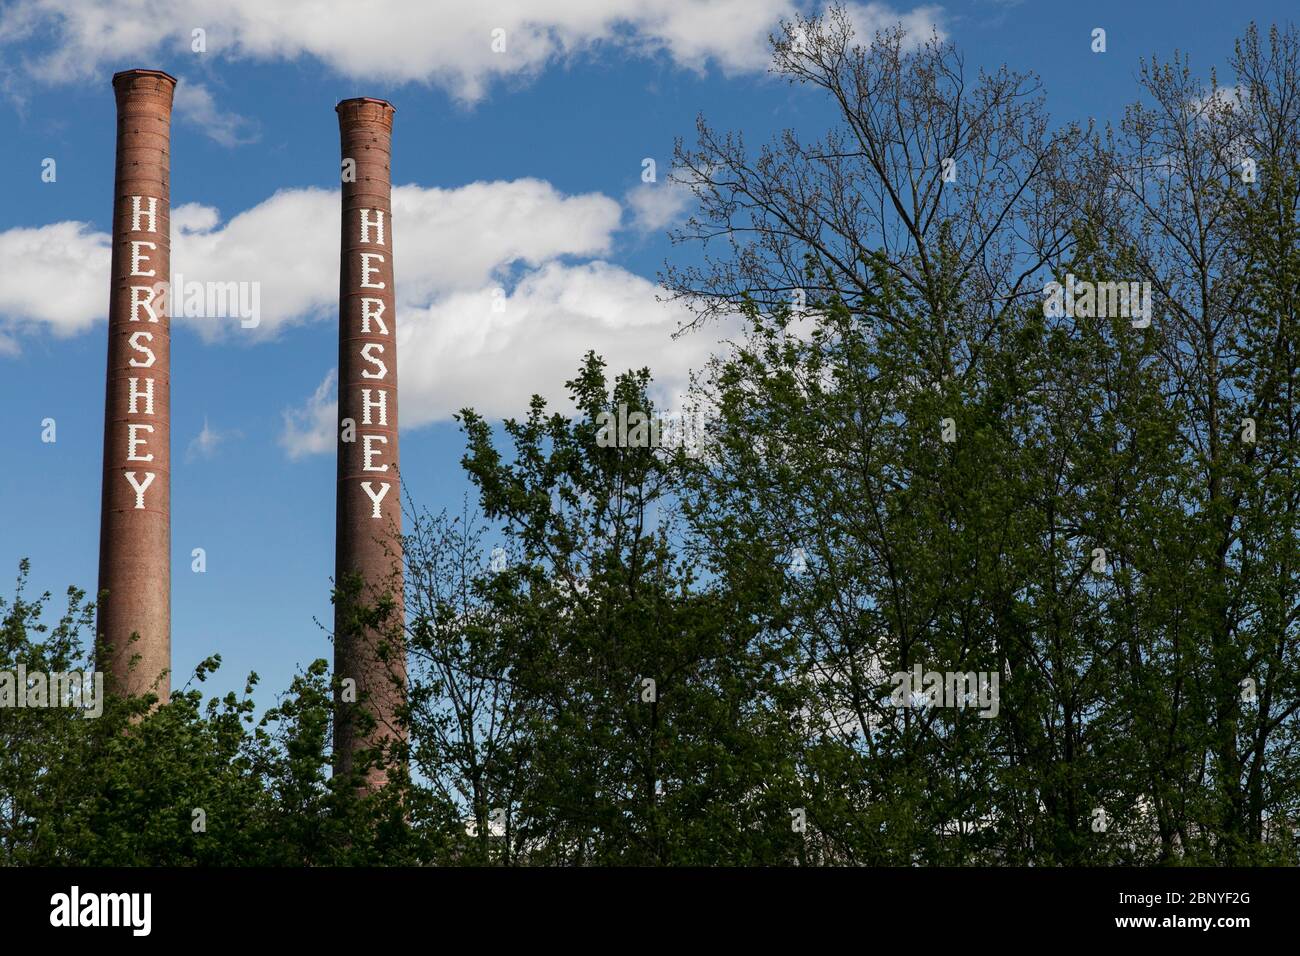 Die Hershey Company (Hershey's) Smokestacks in Hershey, Pennsylvania am 4. Mai 2020. Stockfoto